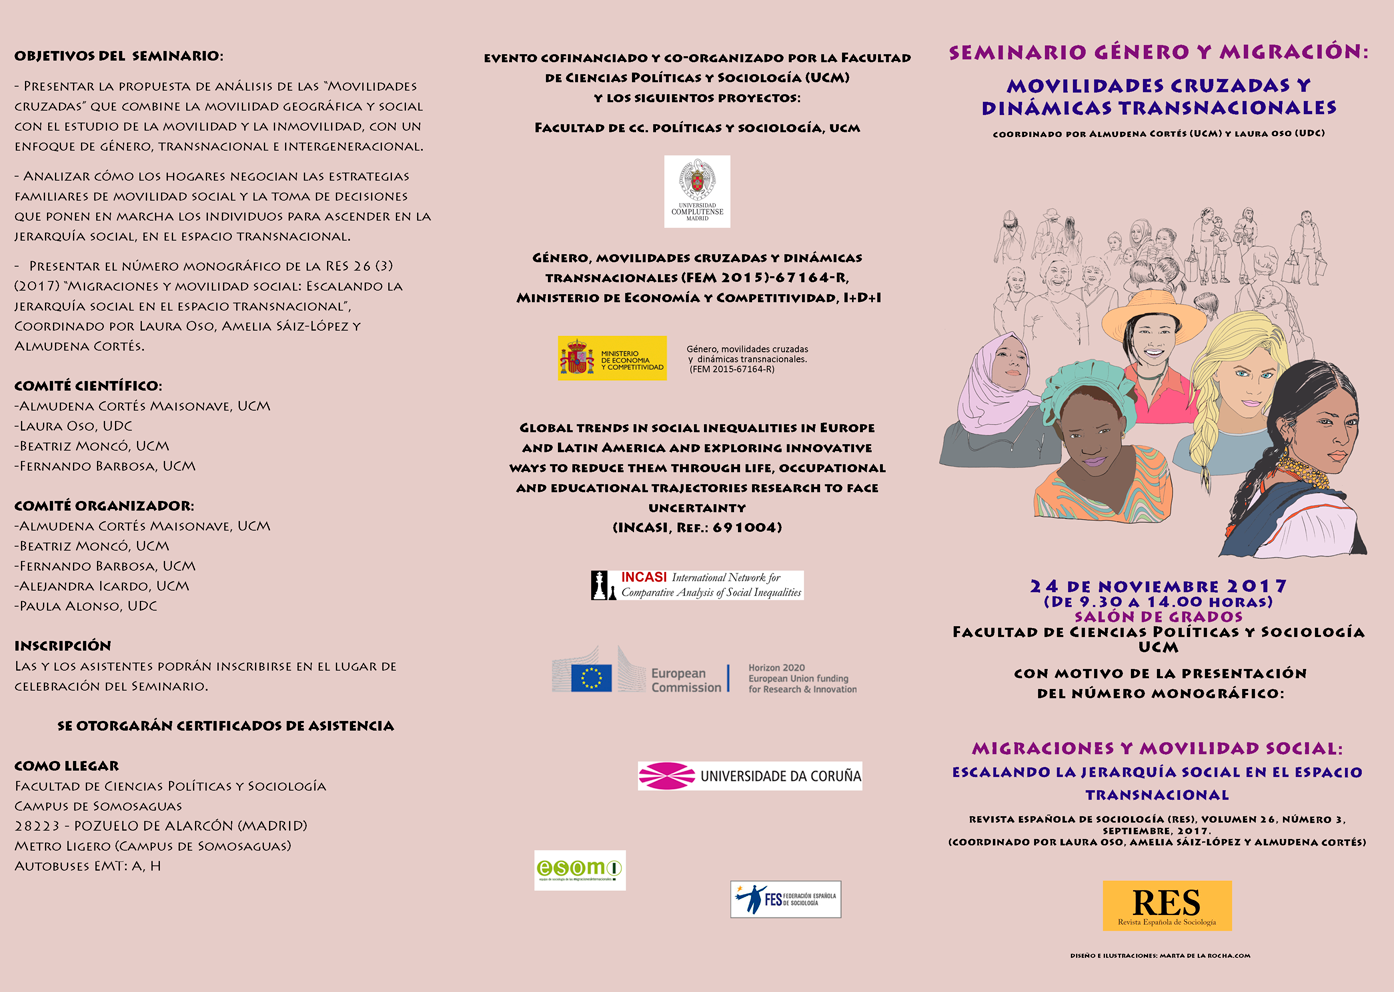 Seminario Género y Migración: Movilidades cruzadas y dinámicas transnacionales (24 de noviembre)